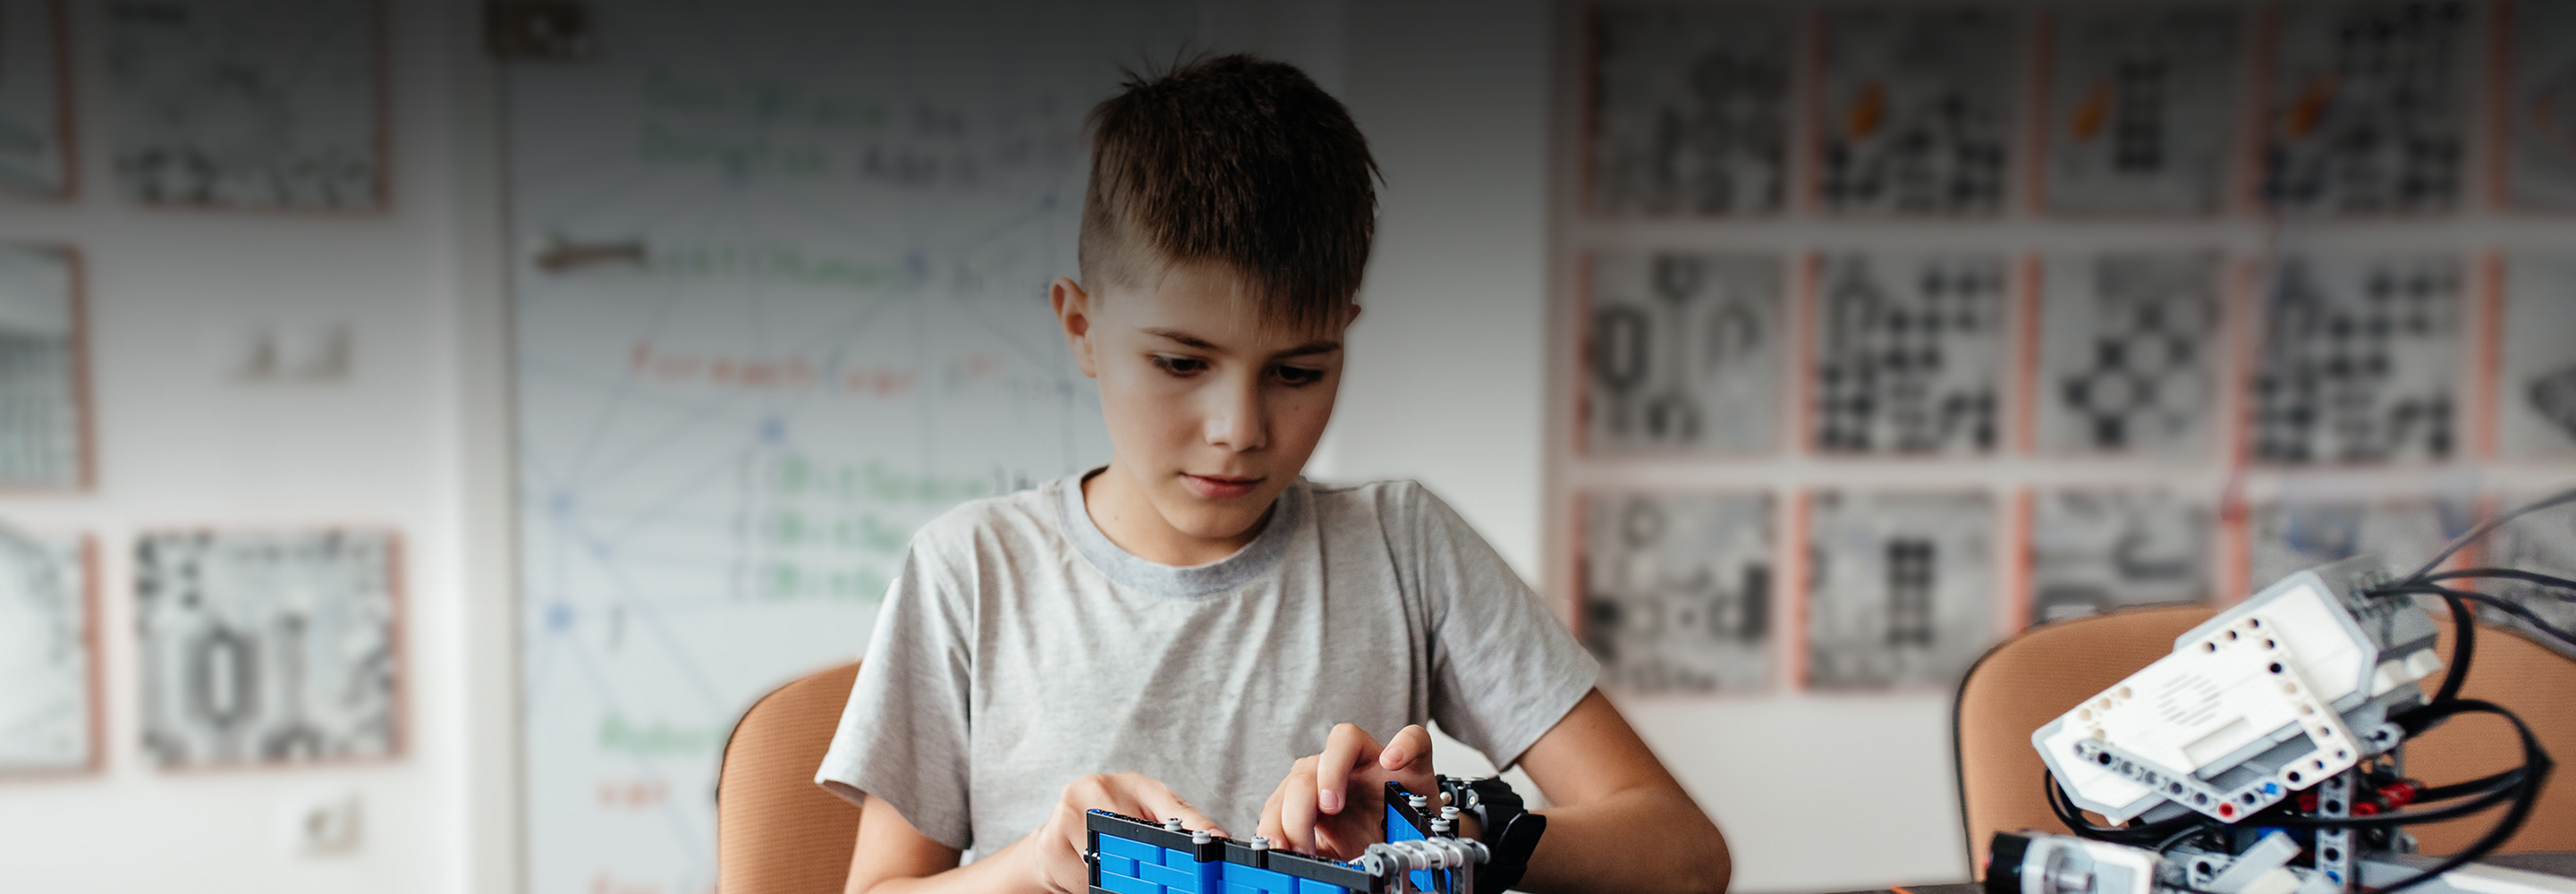 Собрать первого робота и запрограммировать «Лего»: где учат основам робототехники